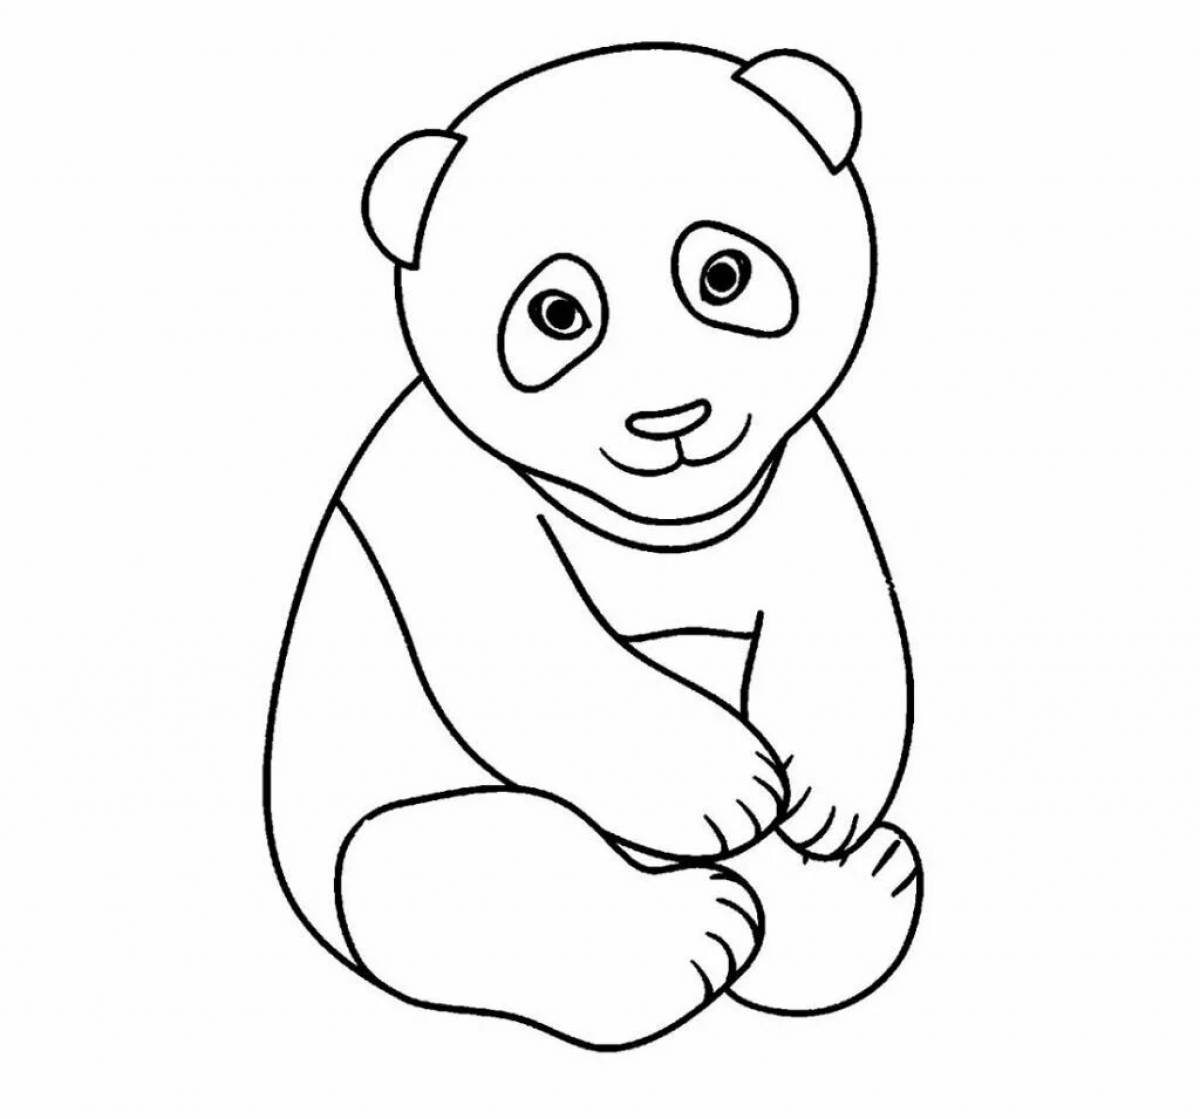 Раскраска маленькая панда